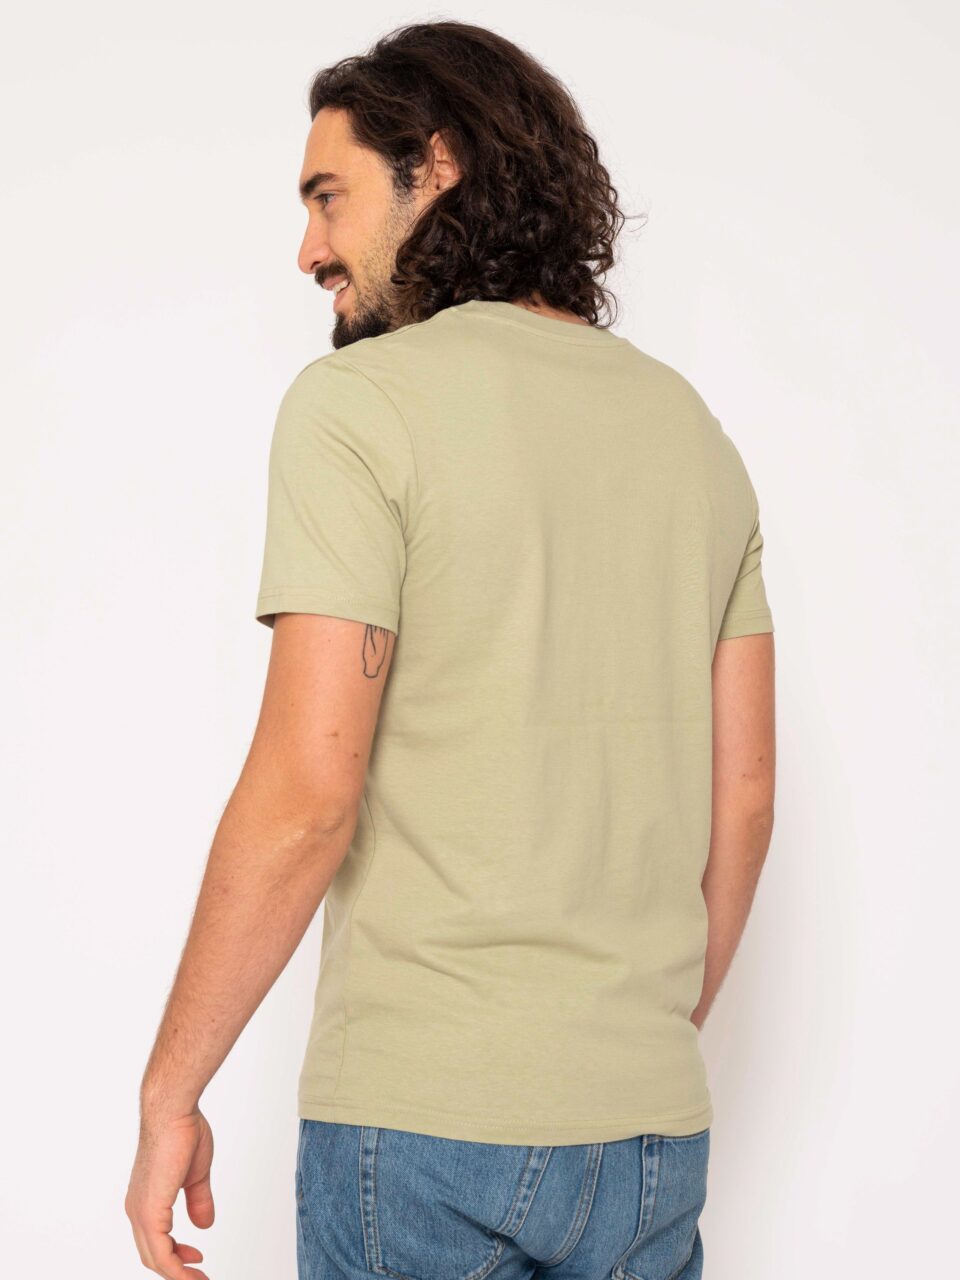 STROM_Sage Green_Shirt